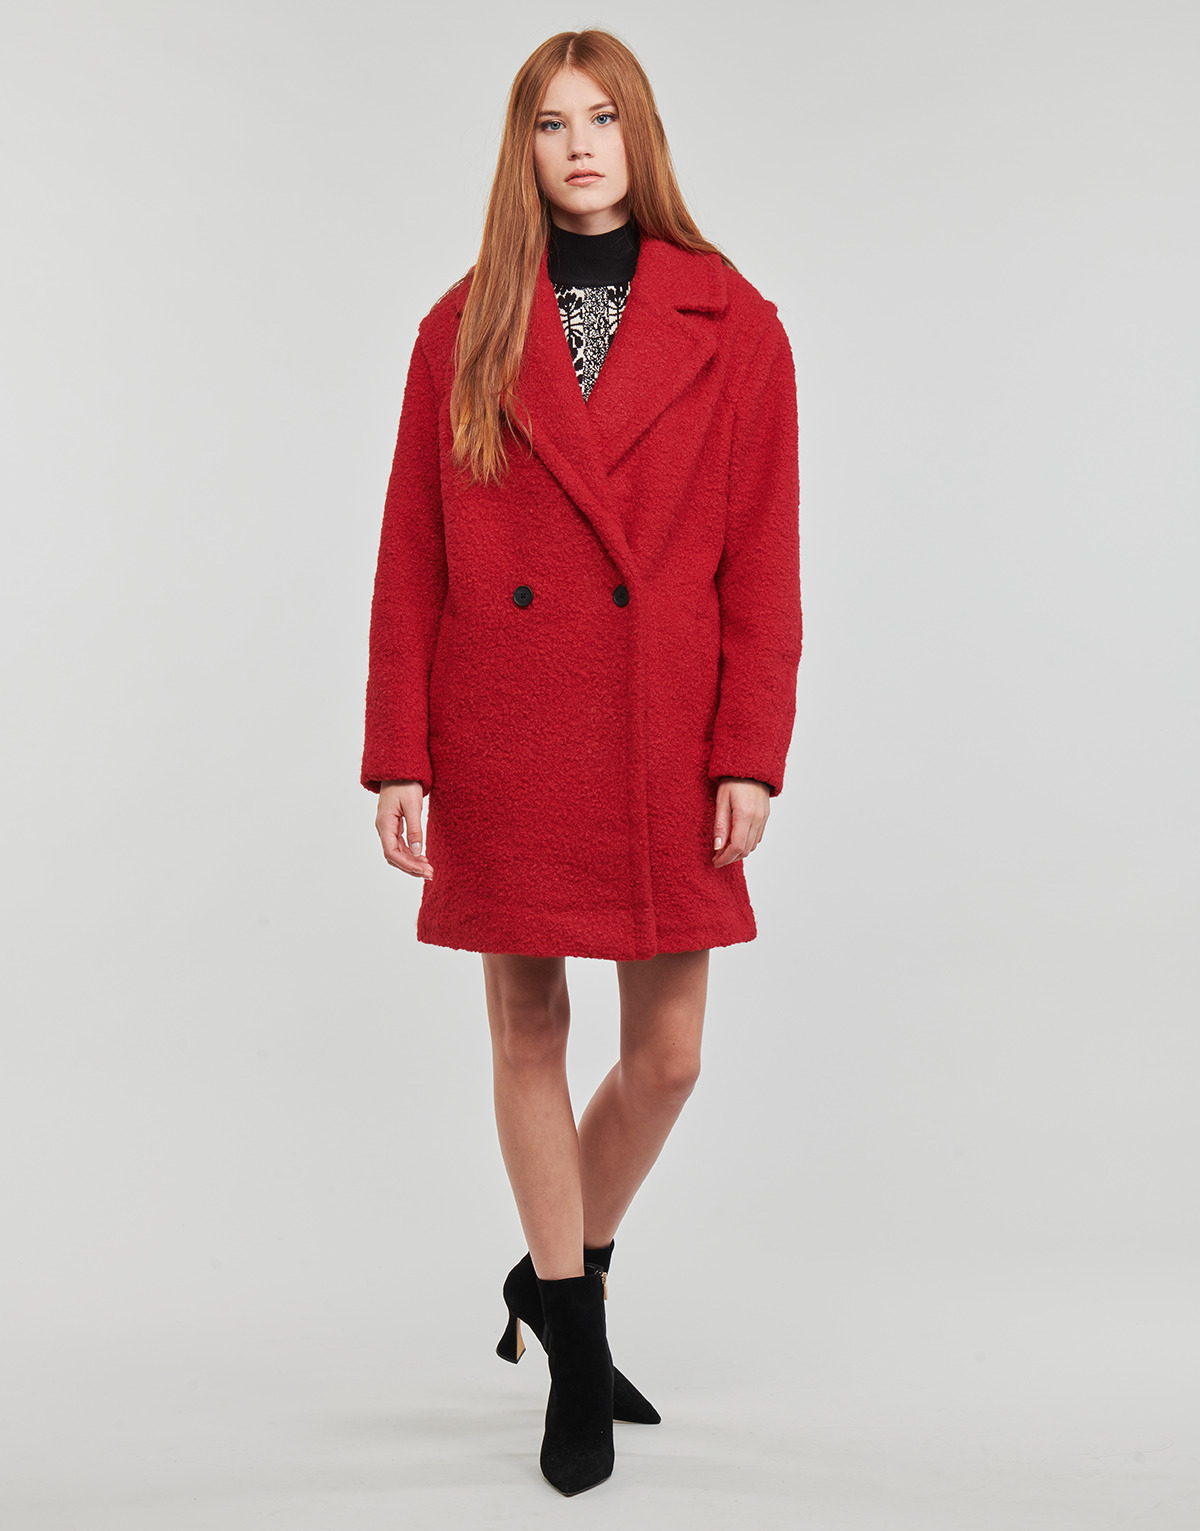 vaatteet Naiset Paksu takki Desigual LONDON Punainen